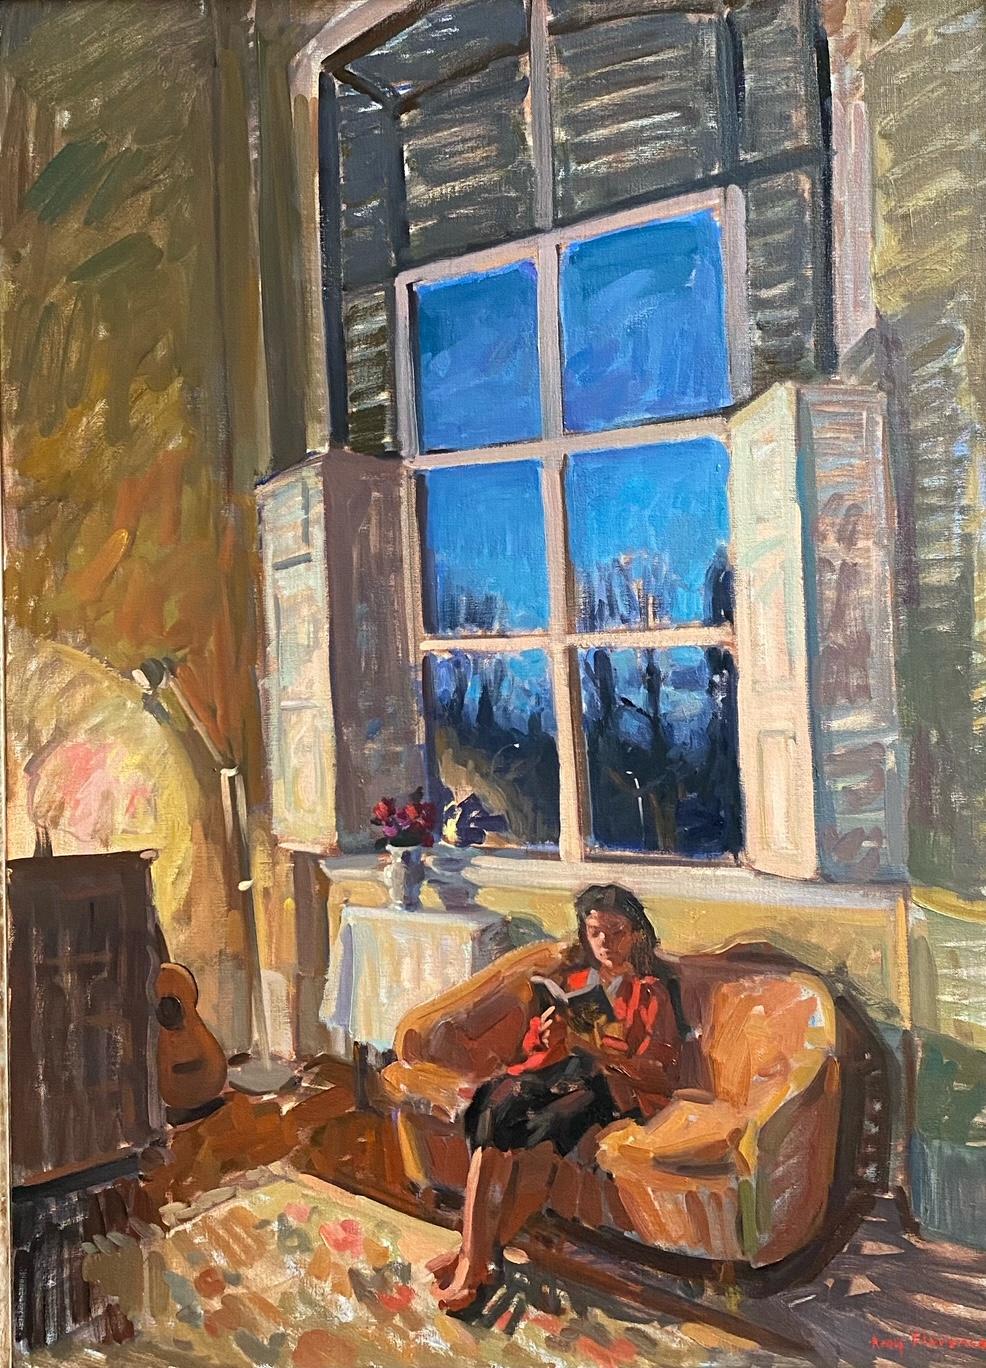 Still-Life Painting Amy Florence - "Crépuscule au Studio" intérieur impressionniste contemporain d'une jeune fille en train de lire.